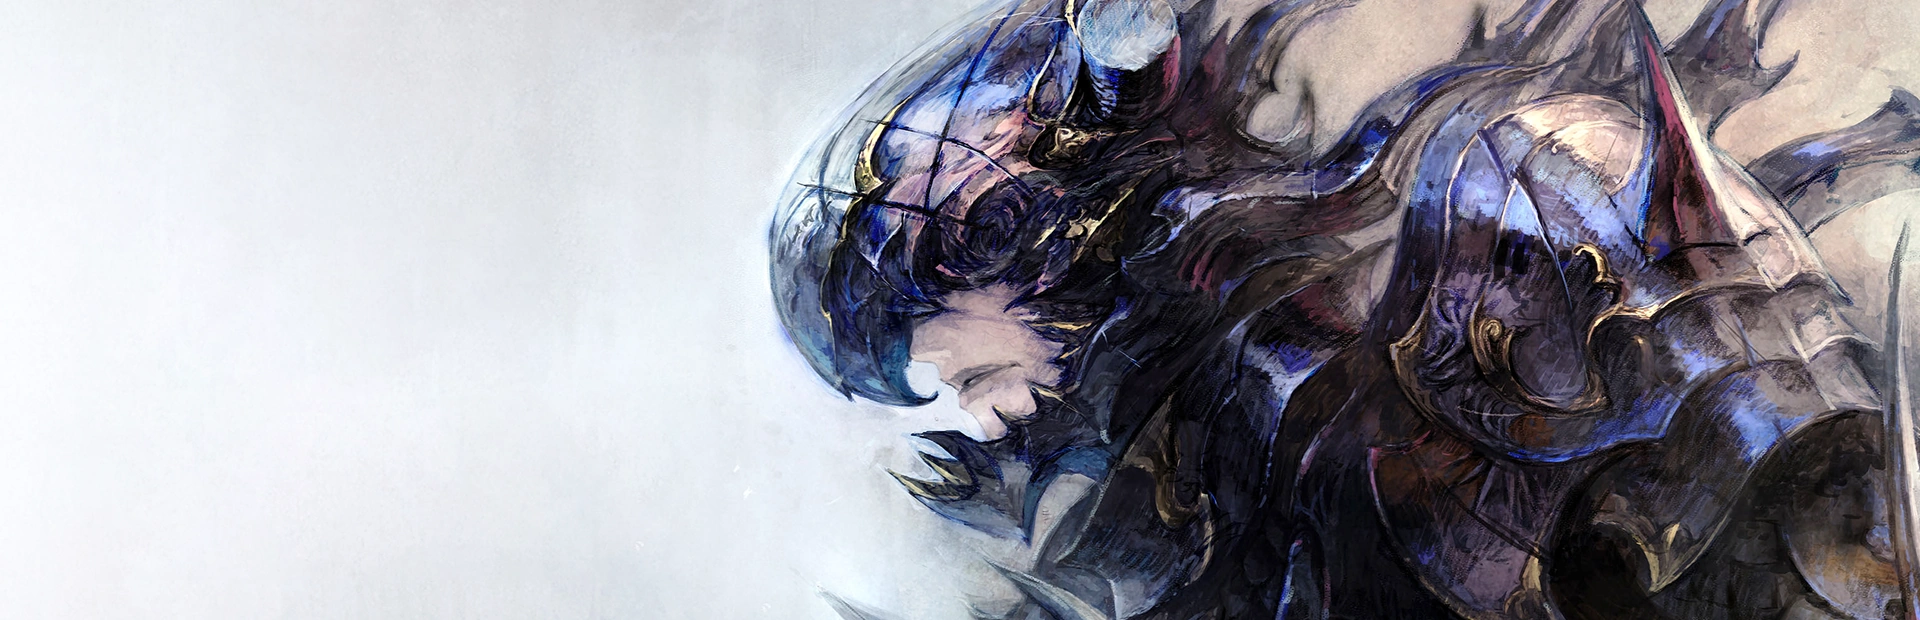 دانلود بازی Final Fantasy XIV: Heavensward برای PC | گیمباتو